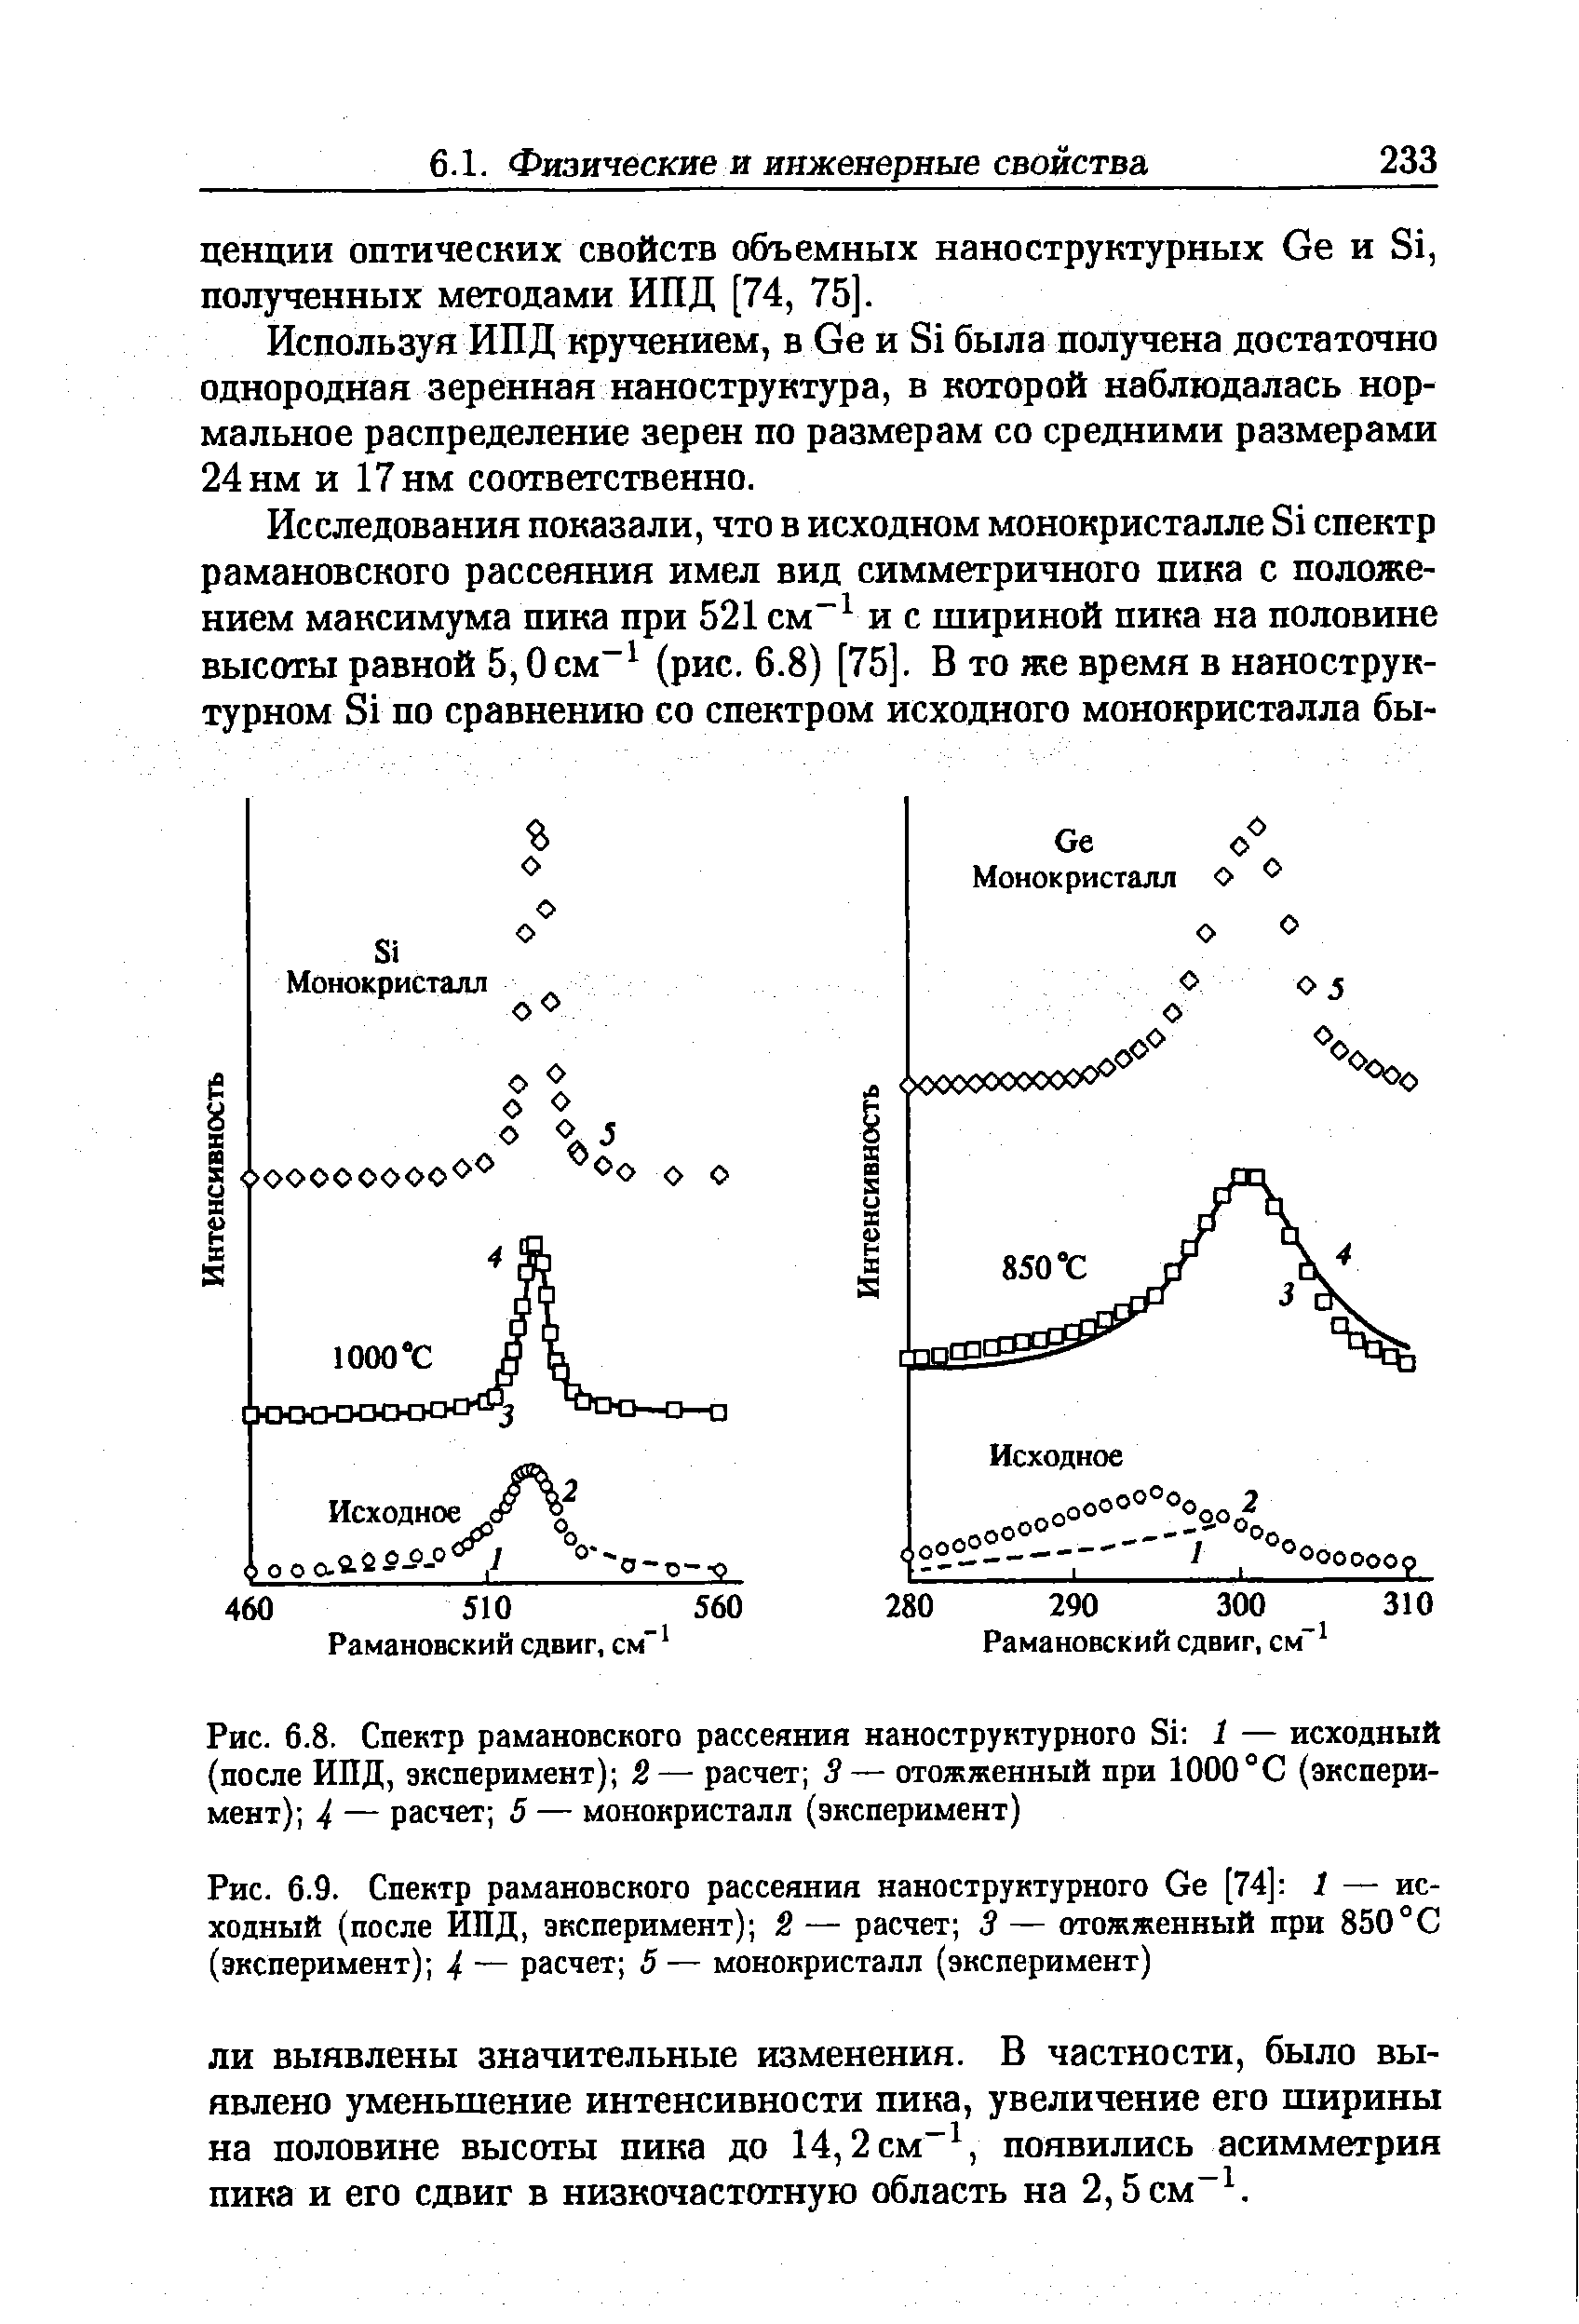 Рис. 6.8. Спектр рамановского рассеяния наноструктурного Si 1 — исходный (после ИПД, эксперимент) 2— расчет 5— отожженный при 1000°С (эксперимент) 4 — расчет 5 — монокристалл (эксперимент)
